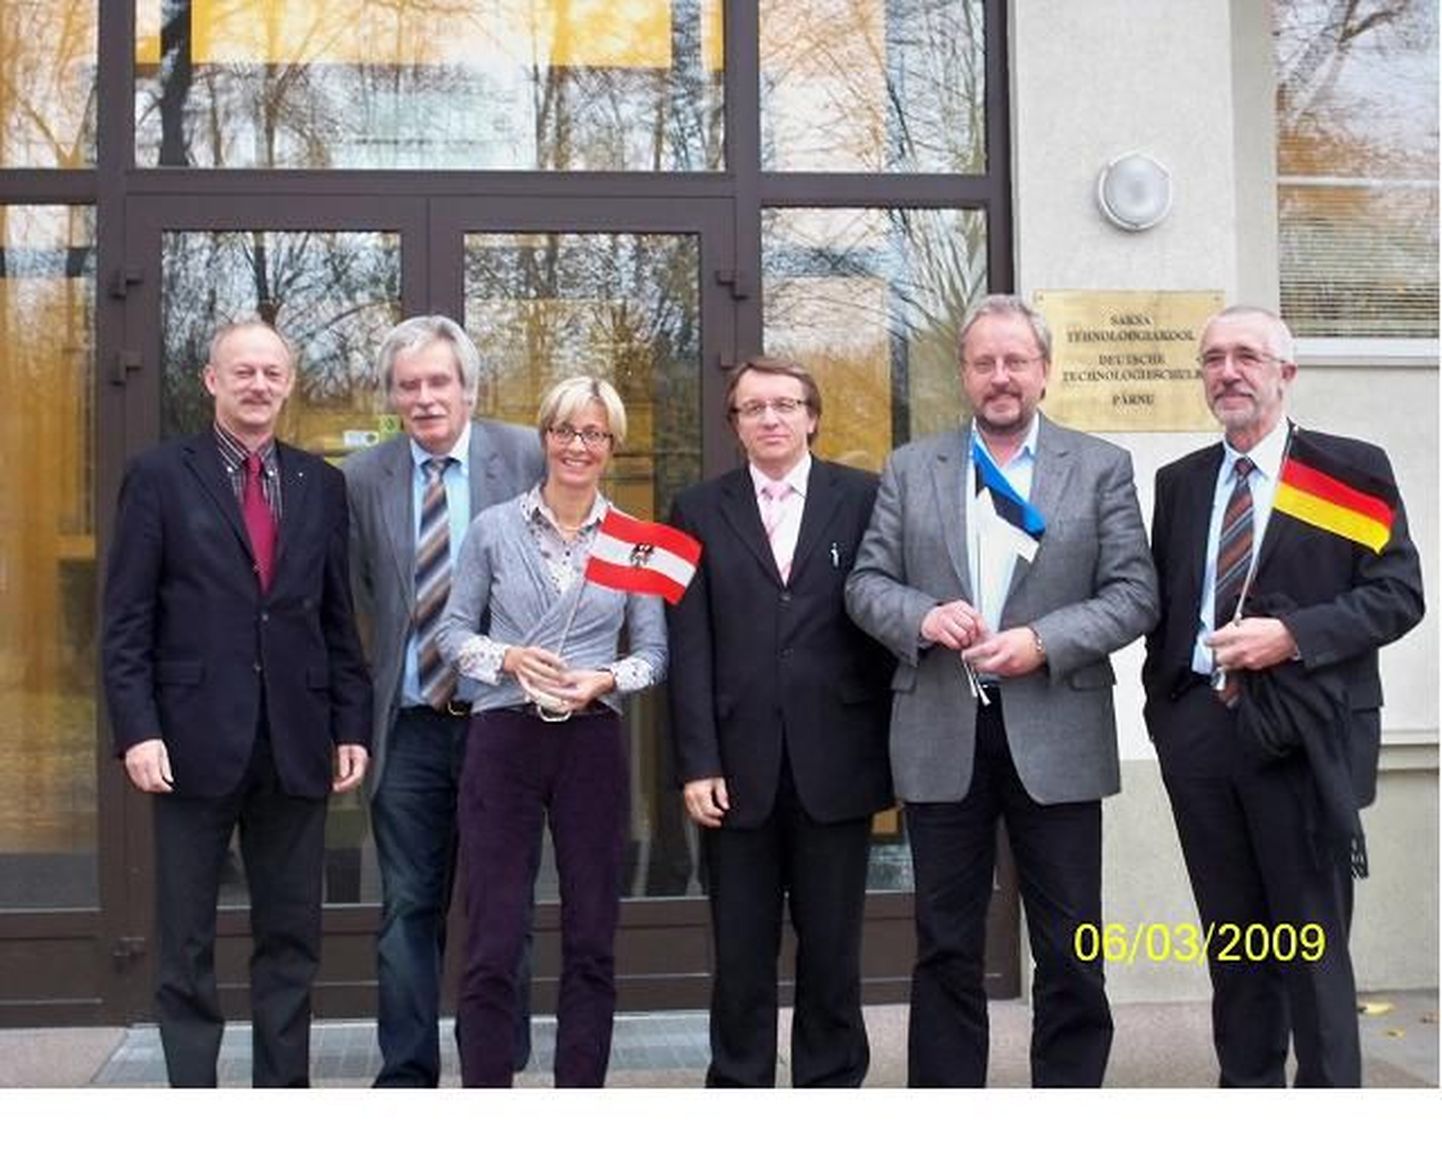 Pärnu Saksa tehnoloogiakooli väisasid kolleegid Austriast ja Saksamaalt.